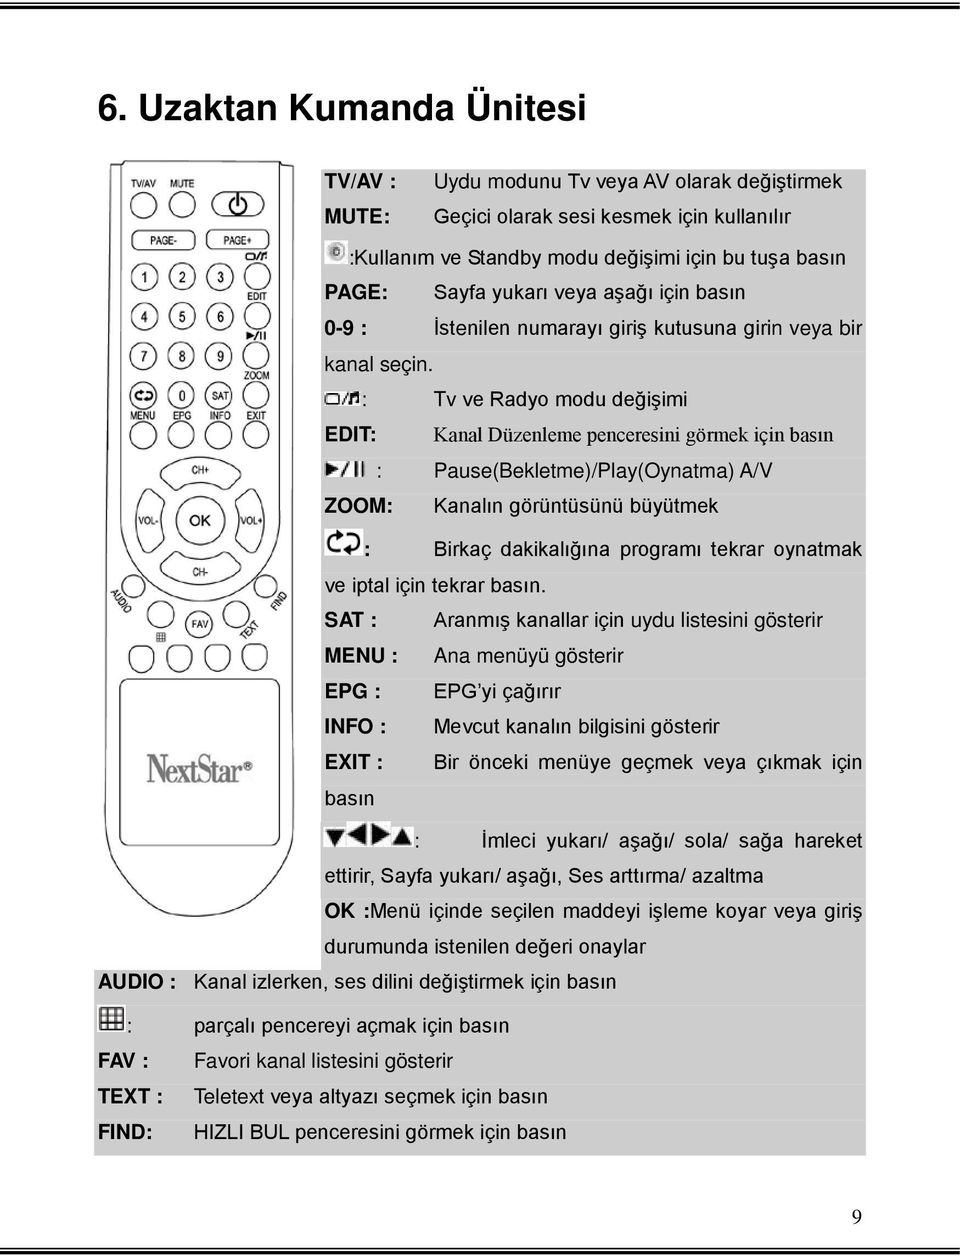 : Tv ve Radyo modu değişimi EDIT: Kanal Düzenleme penceresini görmek için basın : Pause(Bekletme)/Play(Oynatma) A/V ZOOM: Kanalın görüntüsünü büyütmek : Birkaç dakikalığına programı tekrar oynatmak